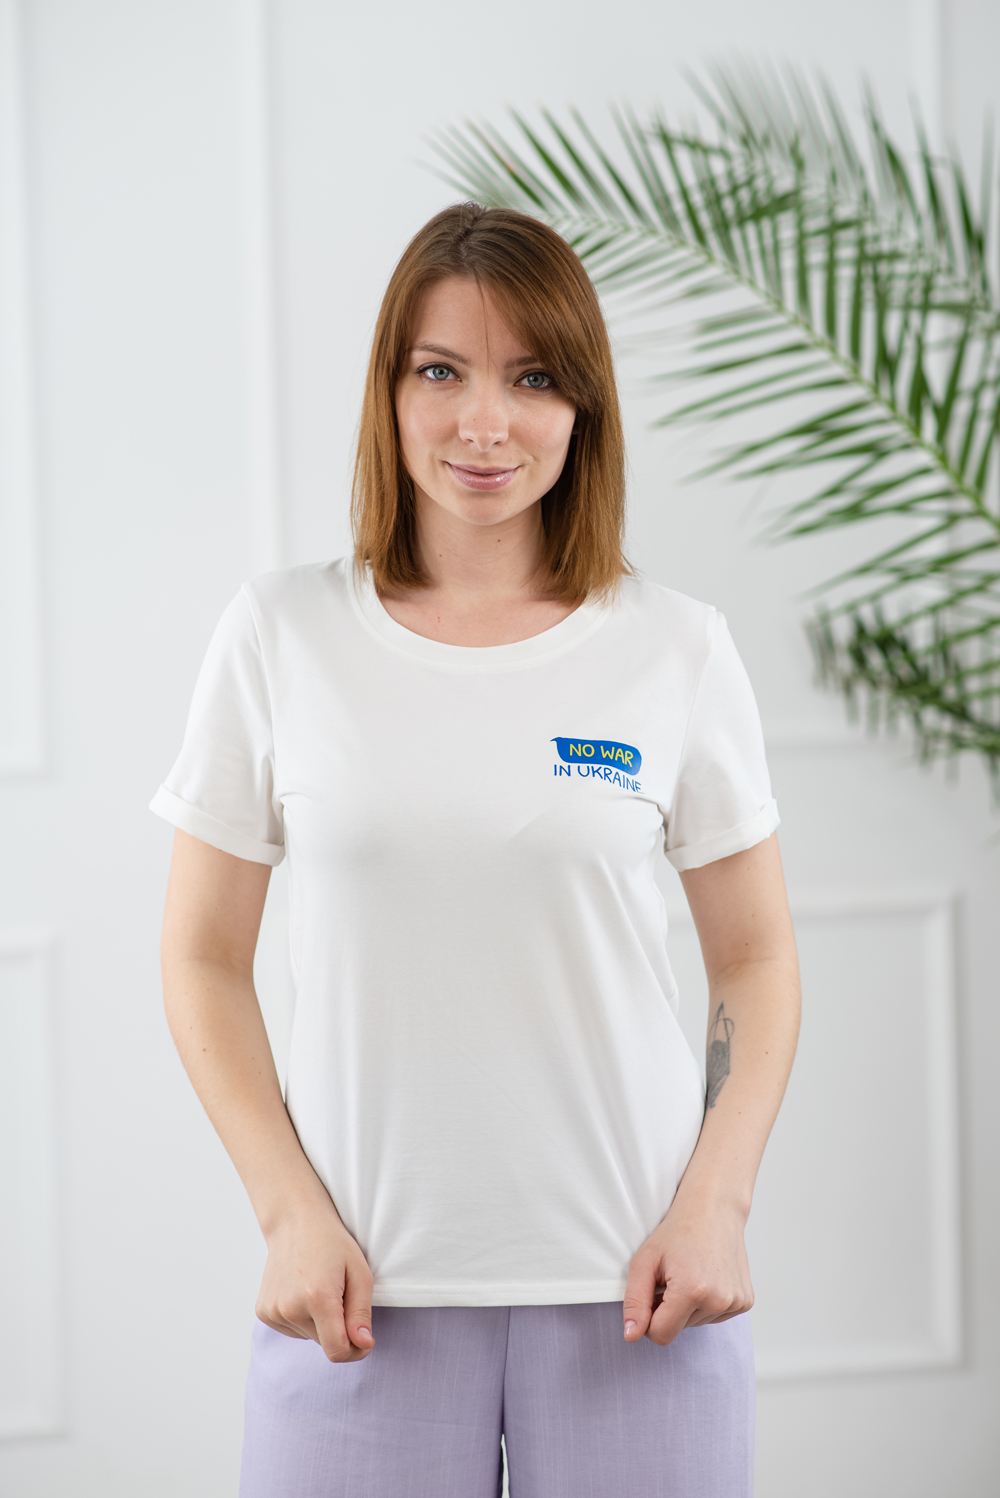 Cotton 'No war in Ukraine' T-shirt